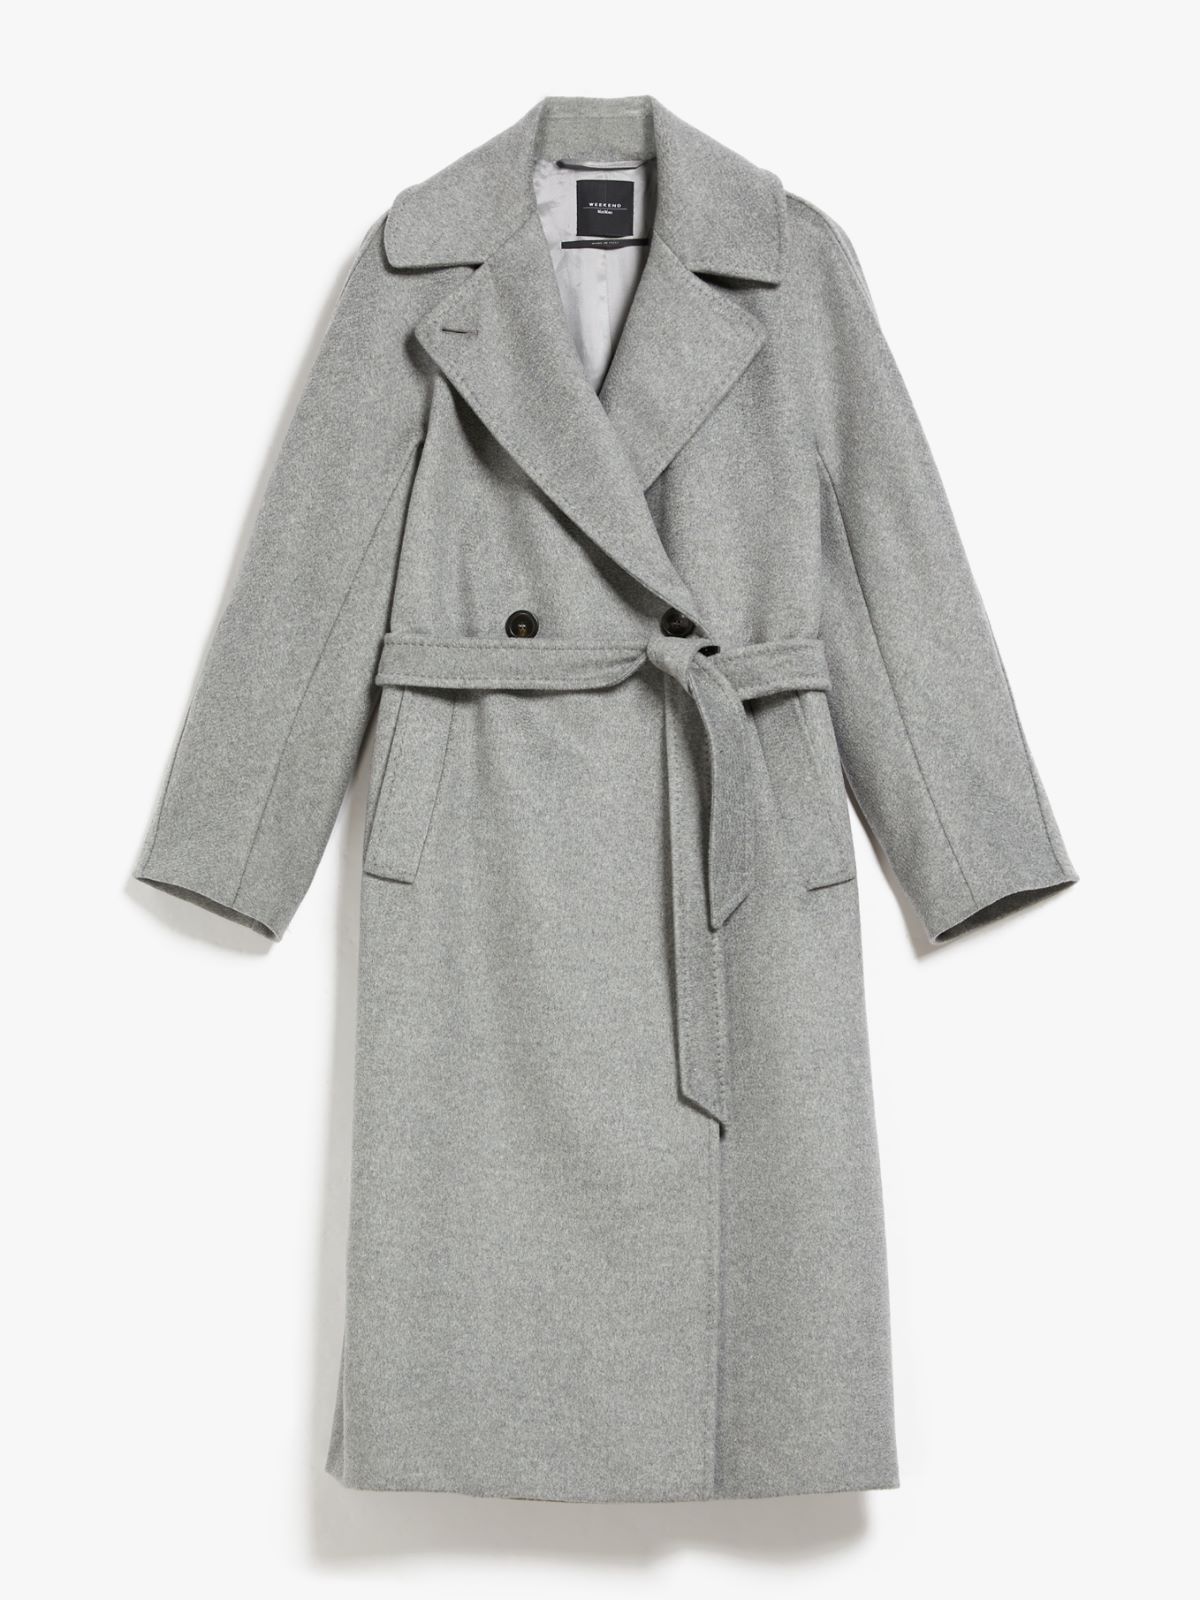 Wool coat, light grey | Weekend Max Mara